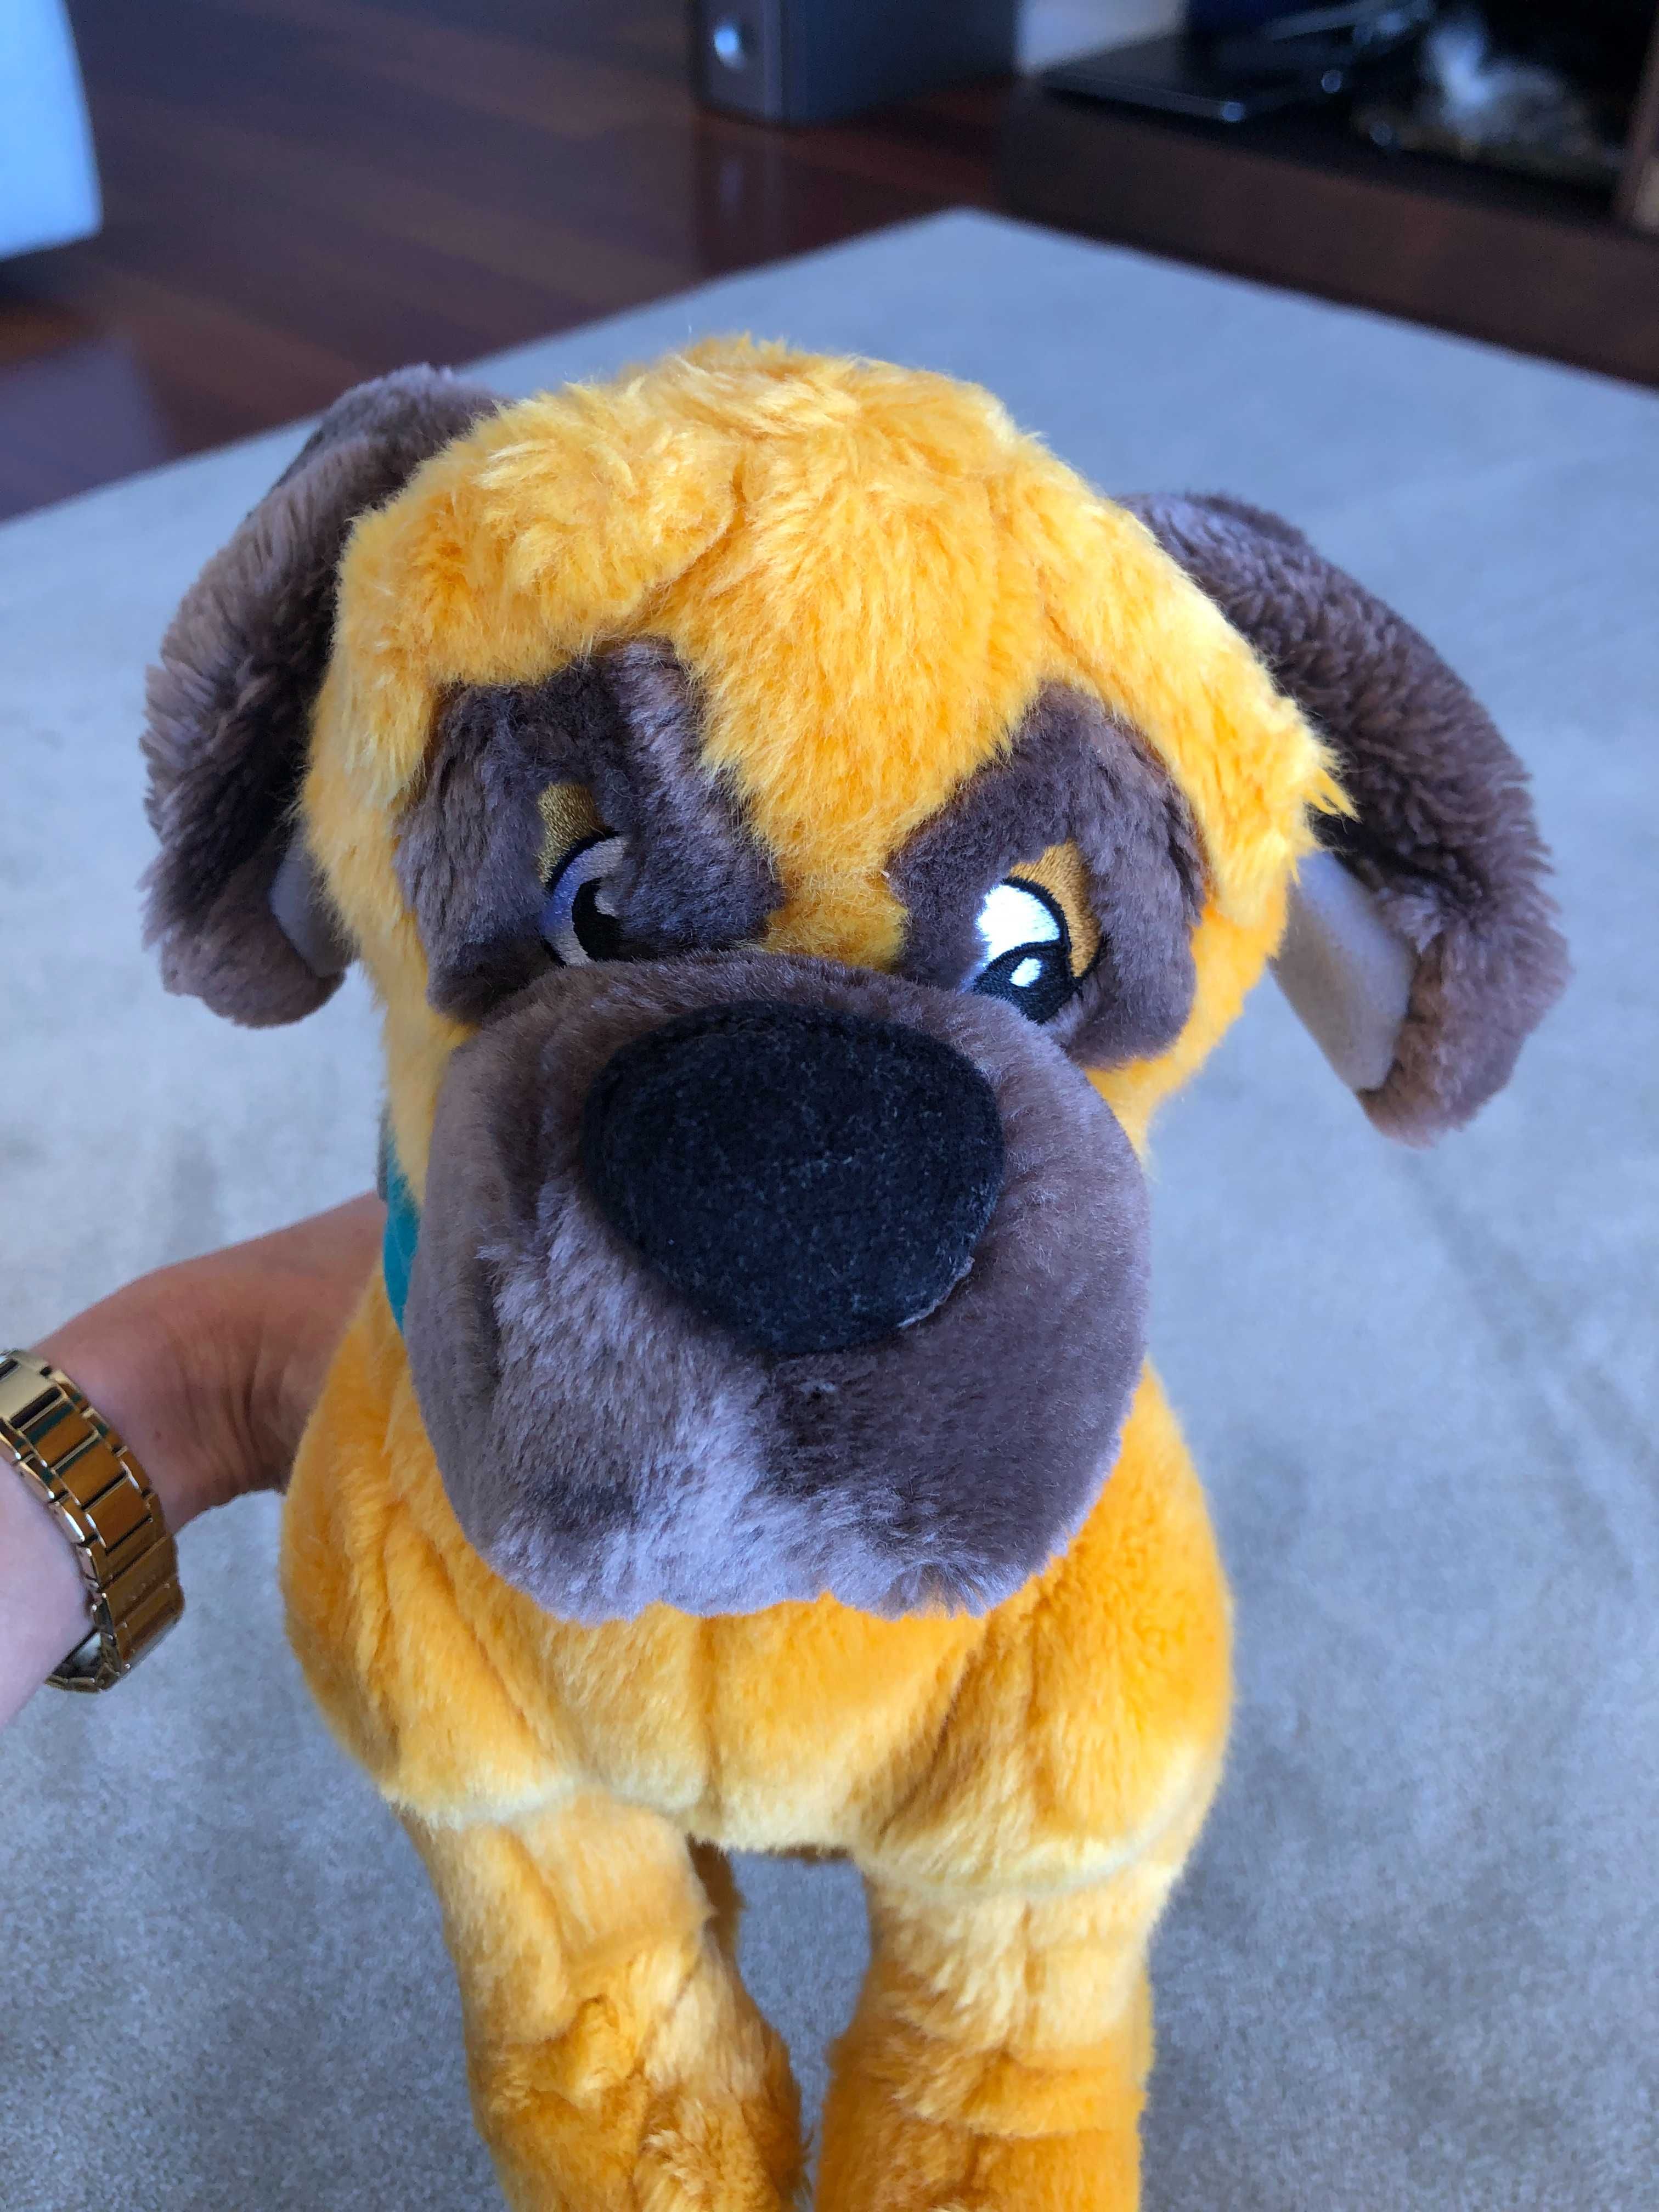 Peluche - cão amarelo com orelhas e focinho castanho